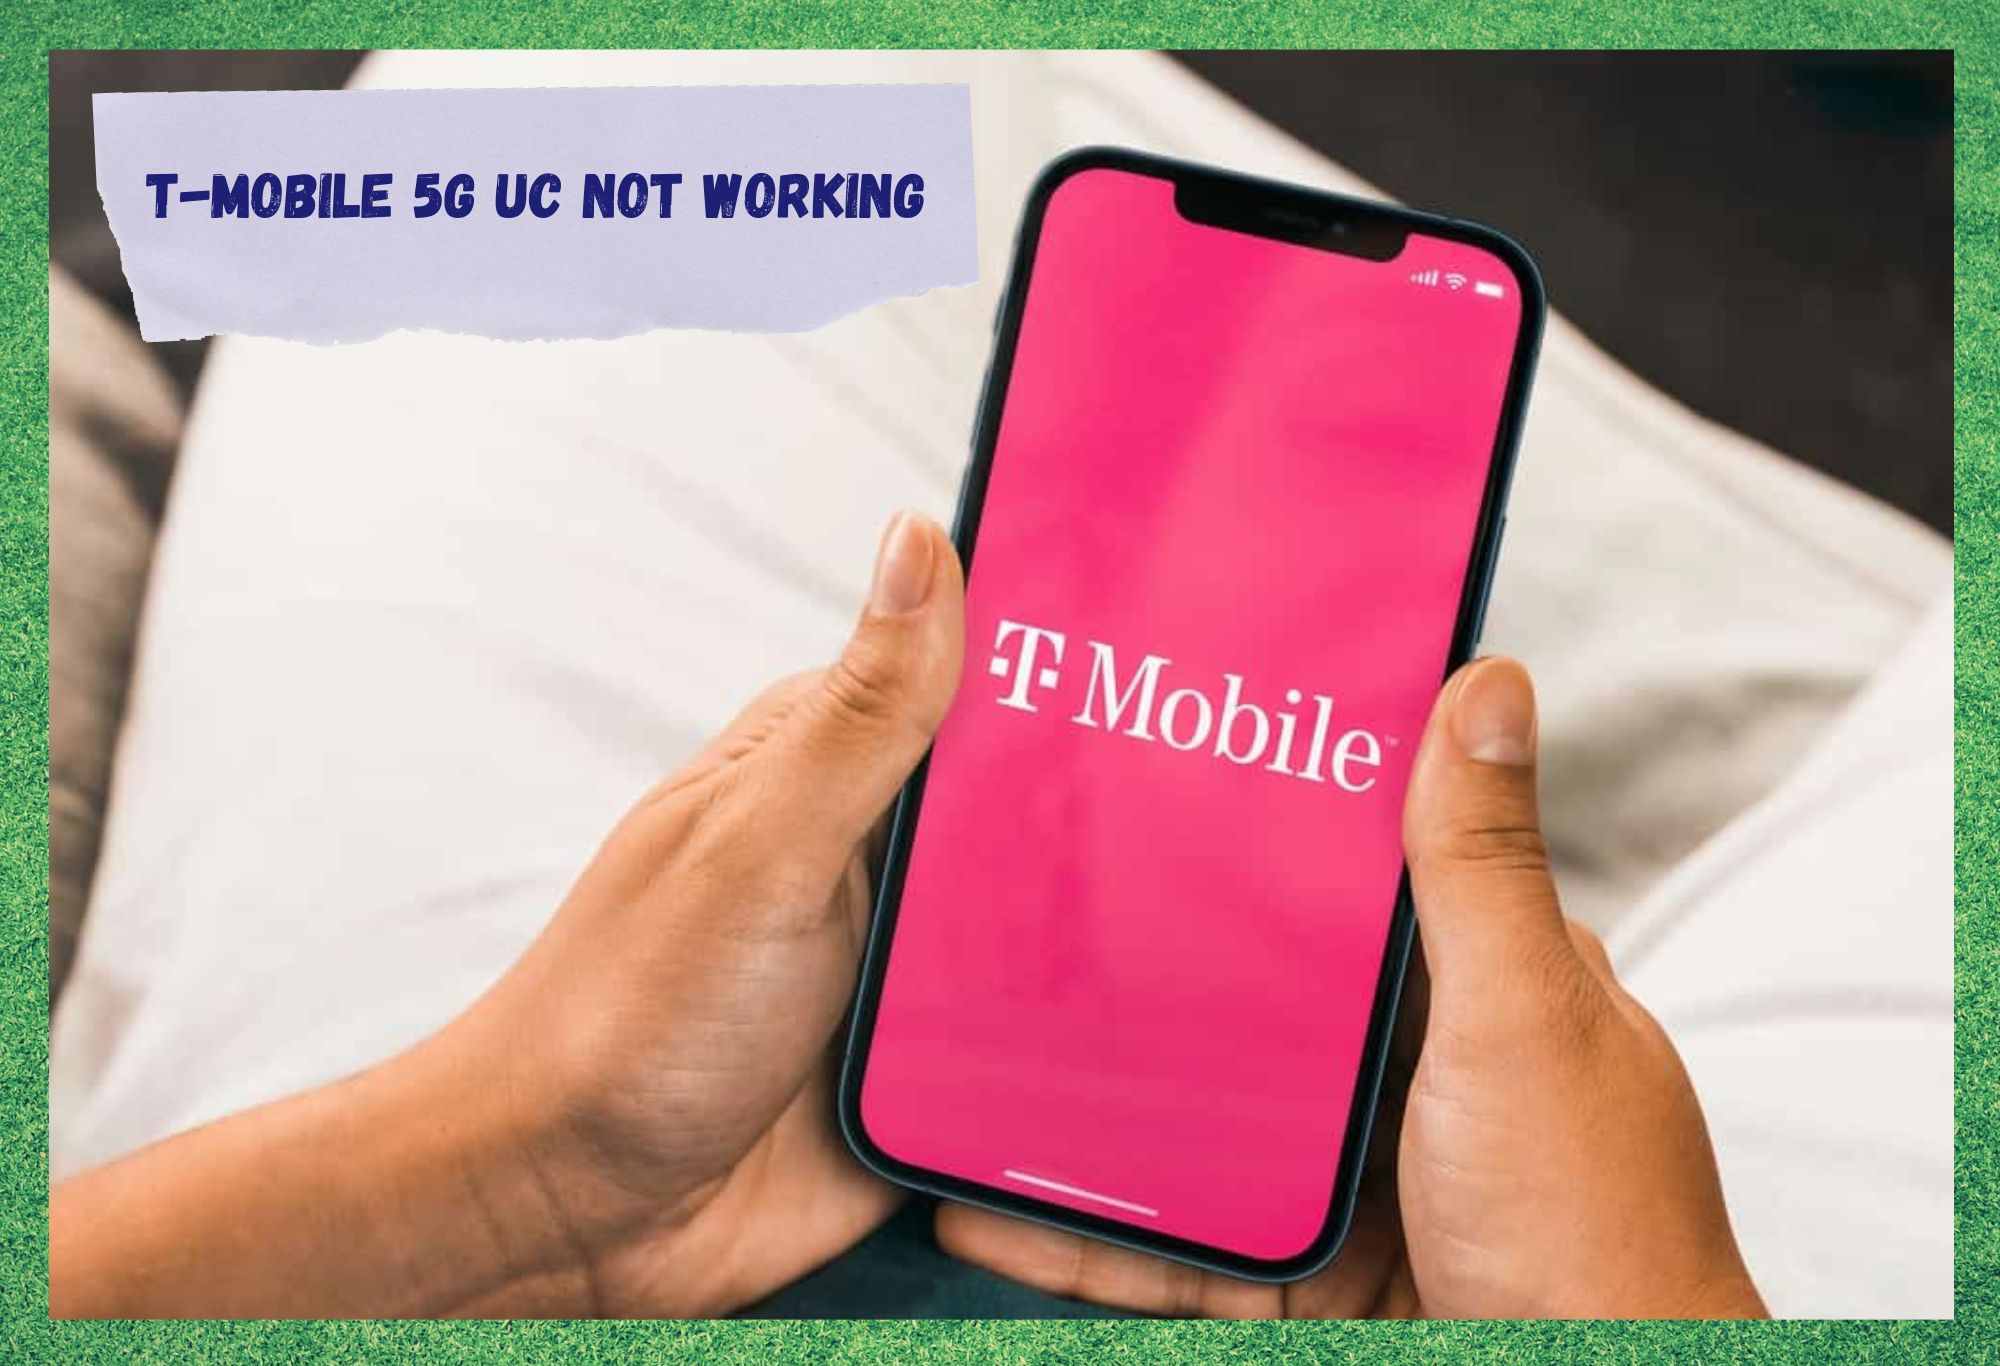 4 oplossingen voor T-Mobile 5G UC die niet werken